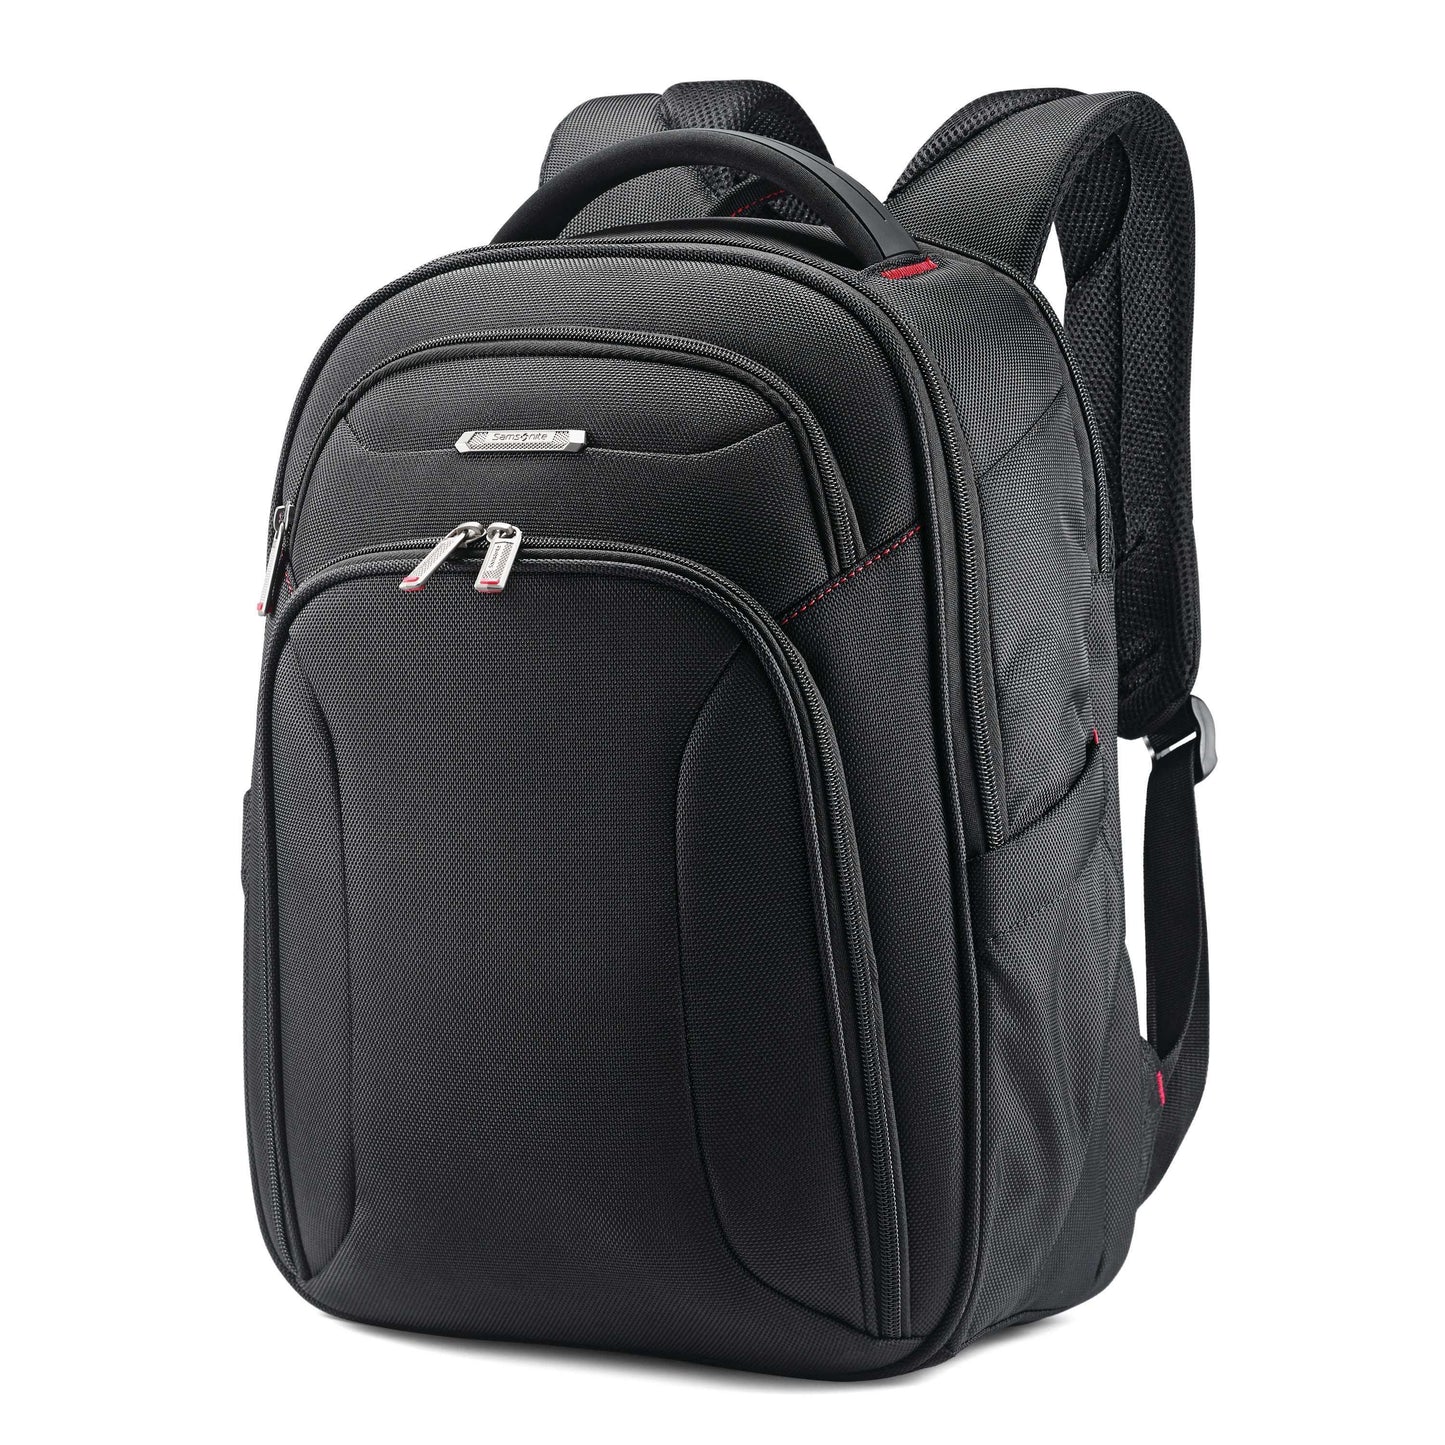 Samsonite Xenon 3 Slim Backpack, Black